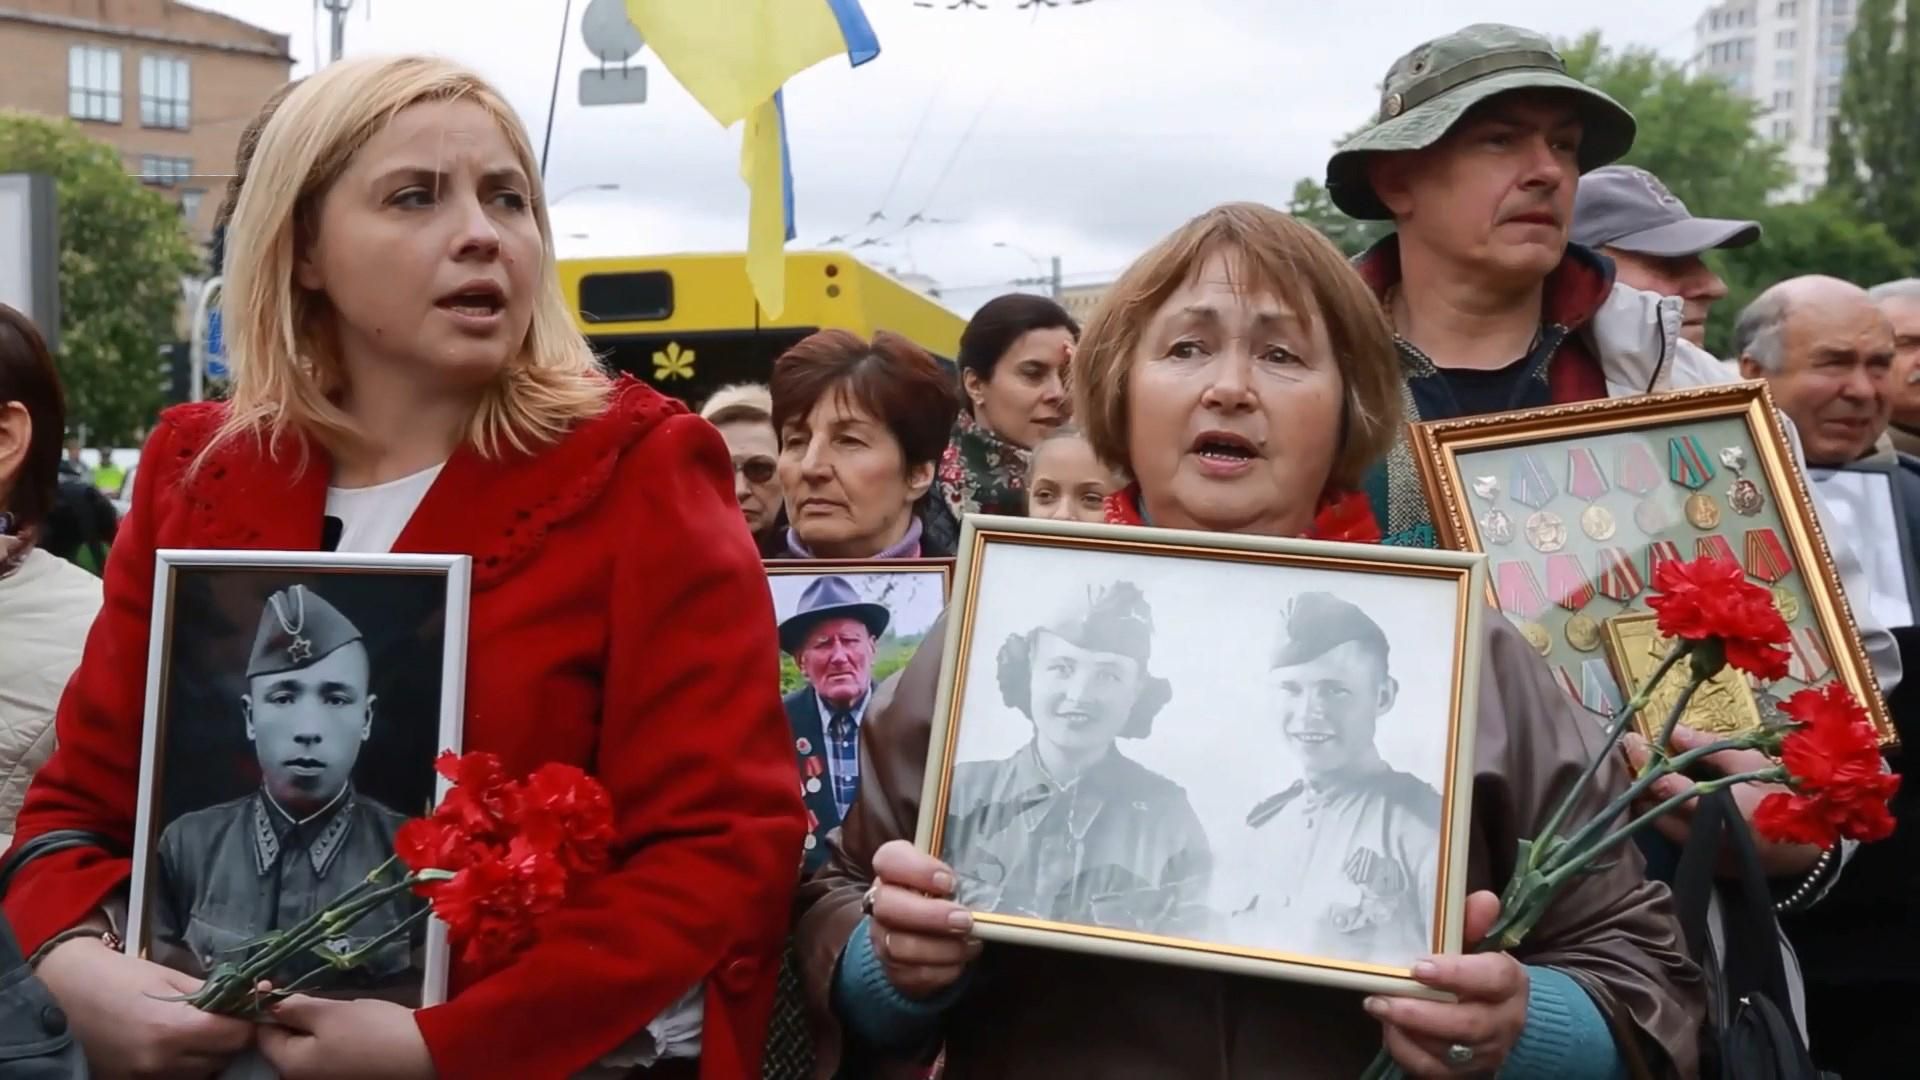 Проросійський марш "Безсмертного полку" пройде у Києві 9 травня: що каже поліція